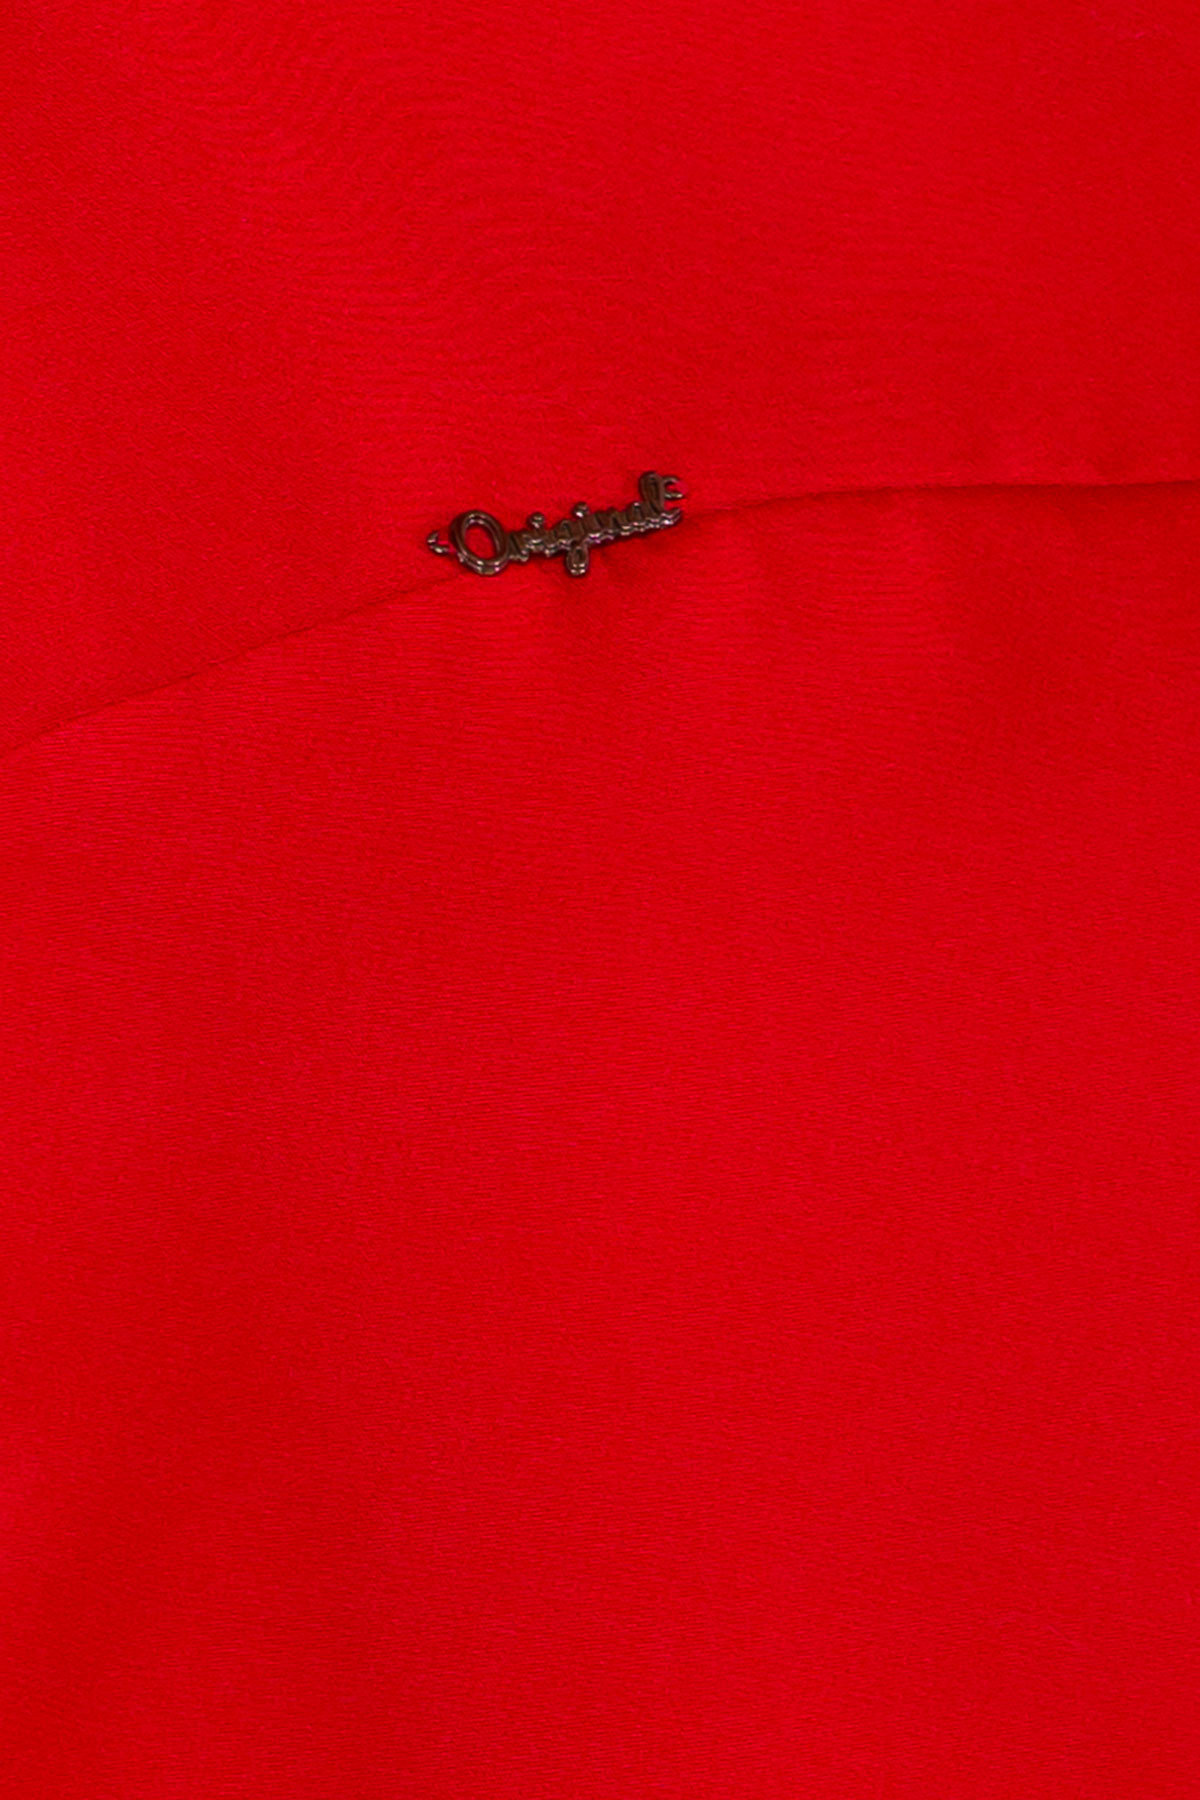 Платье Делафер 3245 АРТ. 16716 Цвет: Красный - фото 4, интернет магазин tm-modus.ru